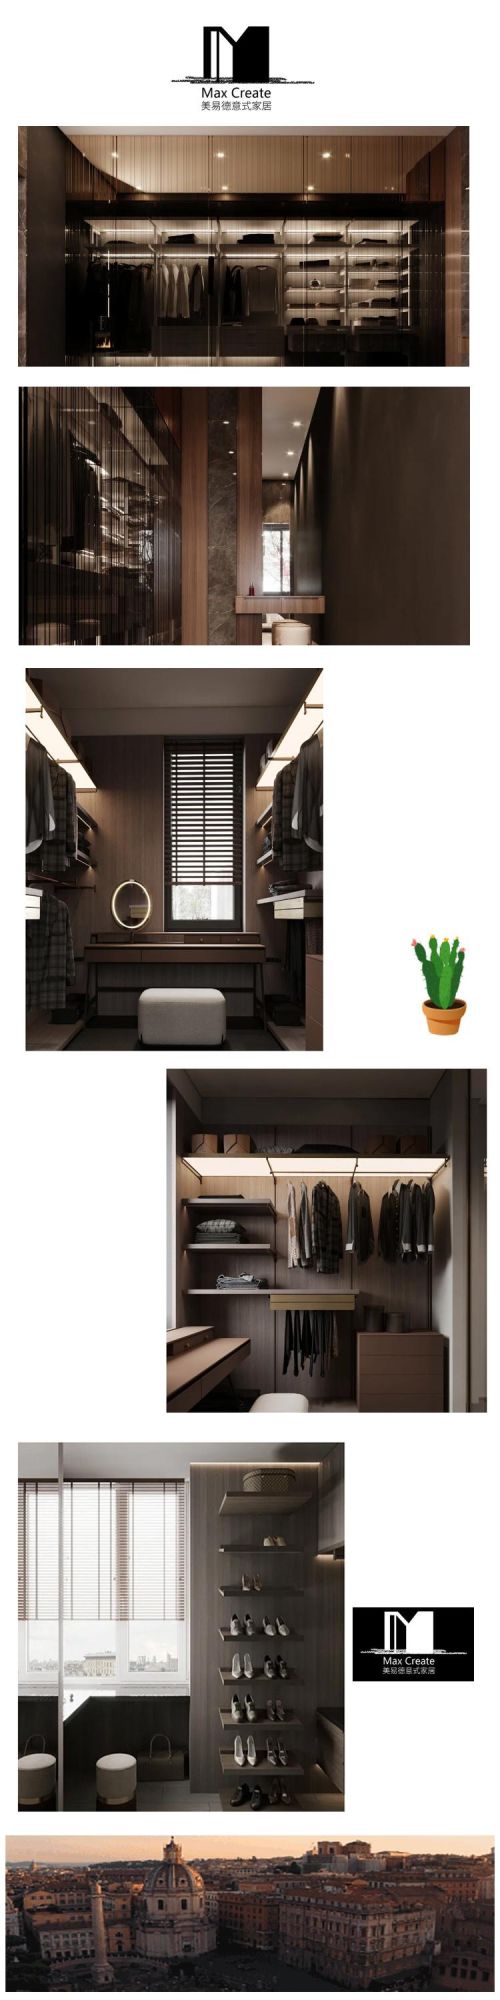 Natural Wood Grain Bedroom Furniture Set Cloakroom Custom Wardrobes Sets for Bedroom Furniture